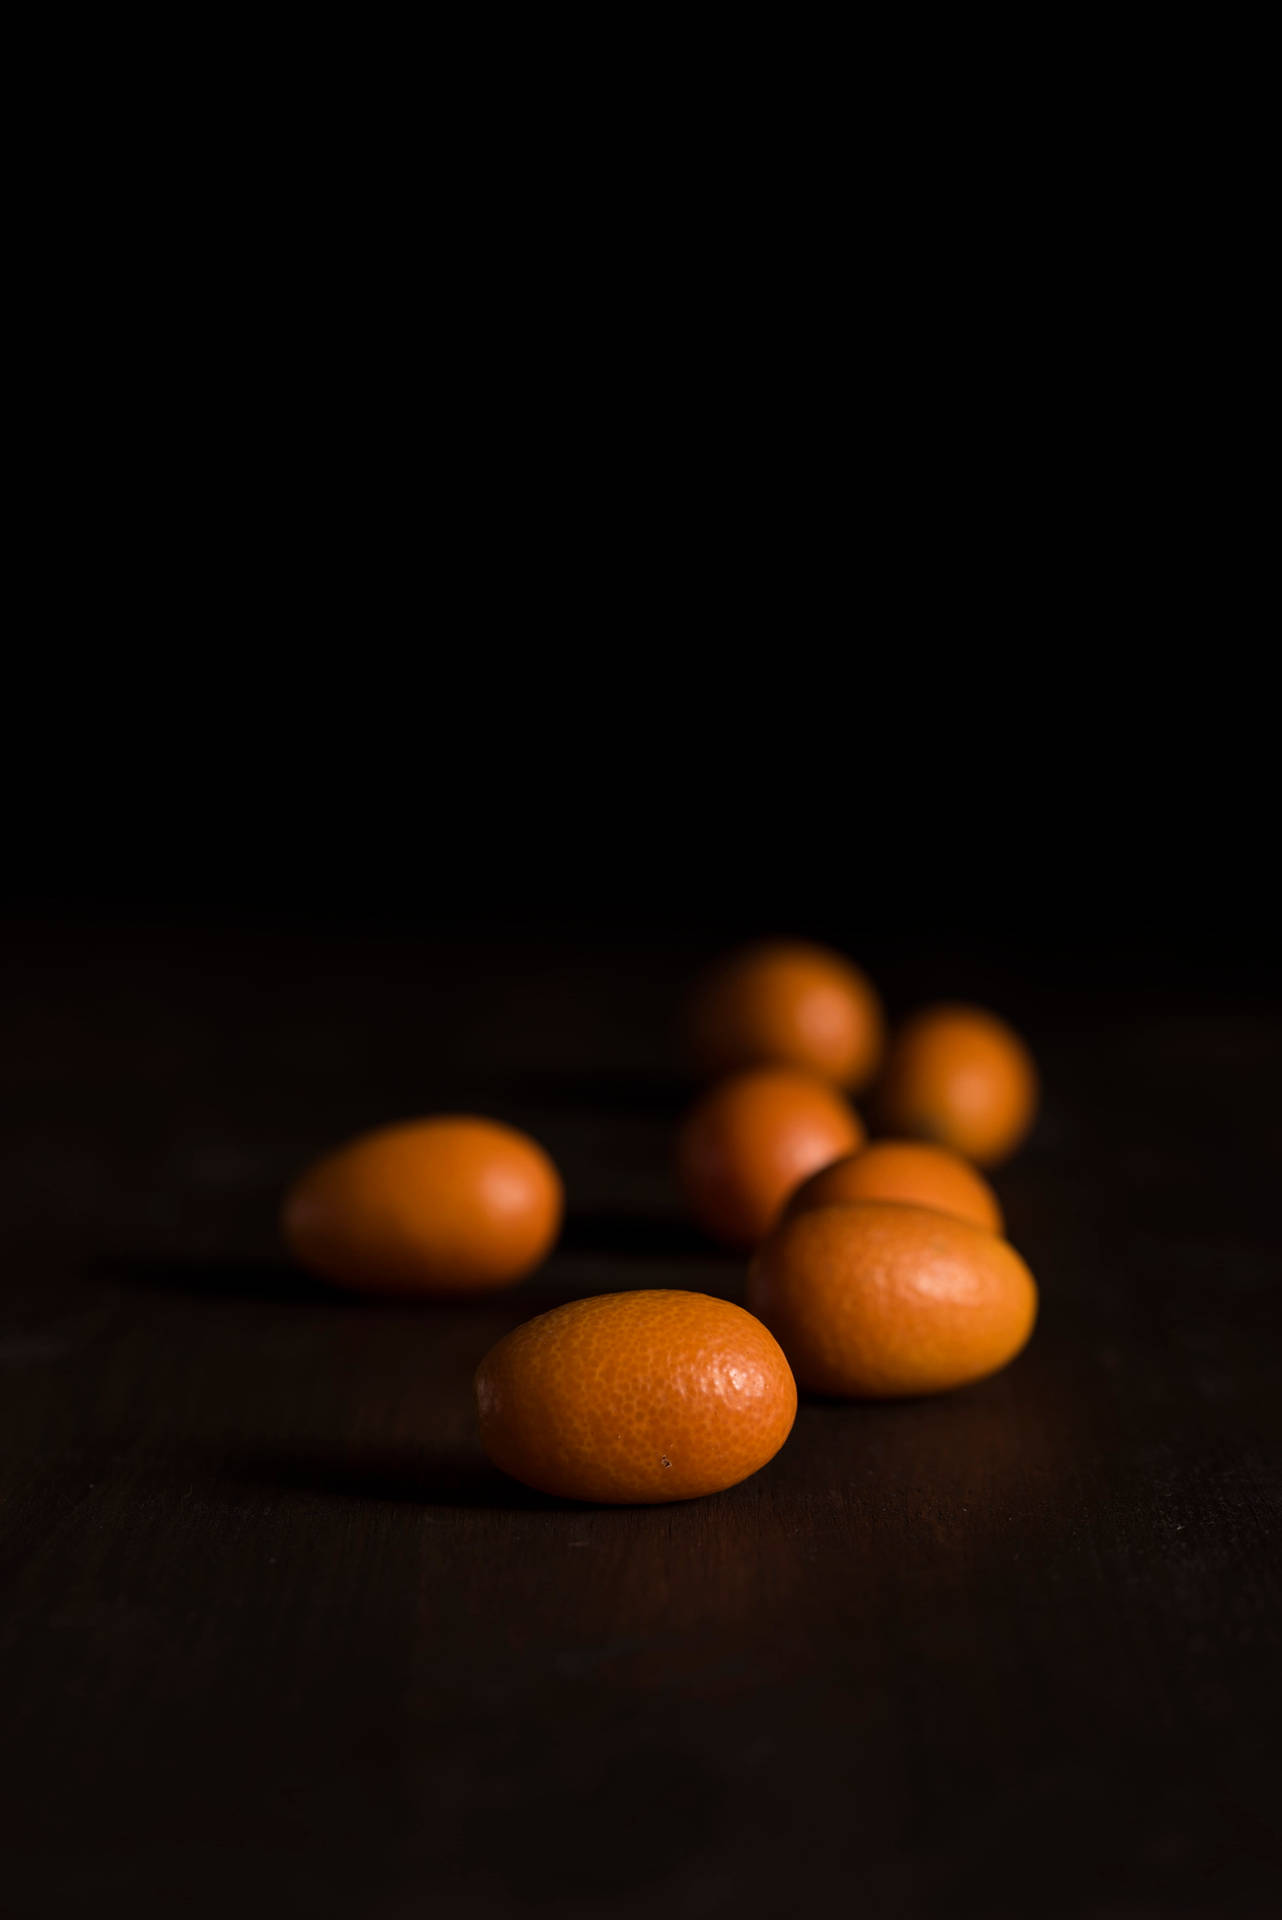 Dunklekumquat-früchte Auf Augenhöhe Fotografiert Wallpaper